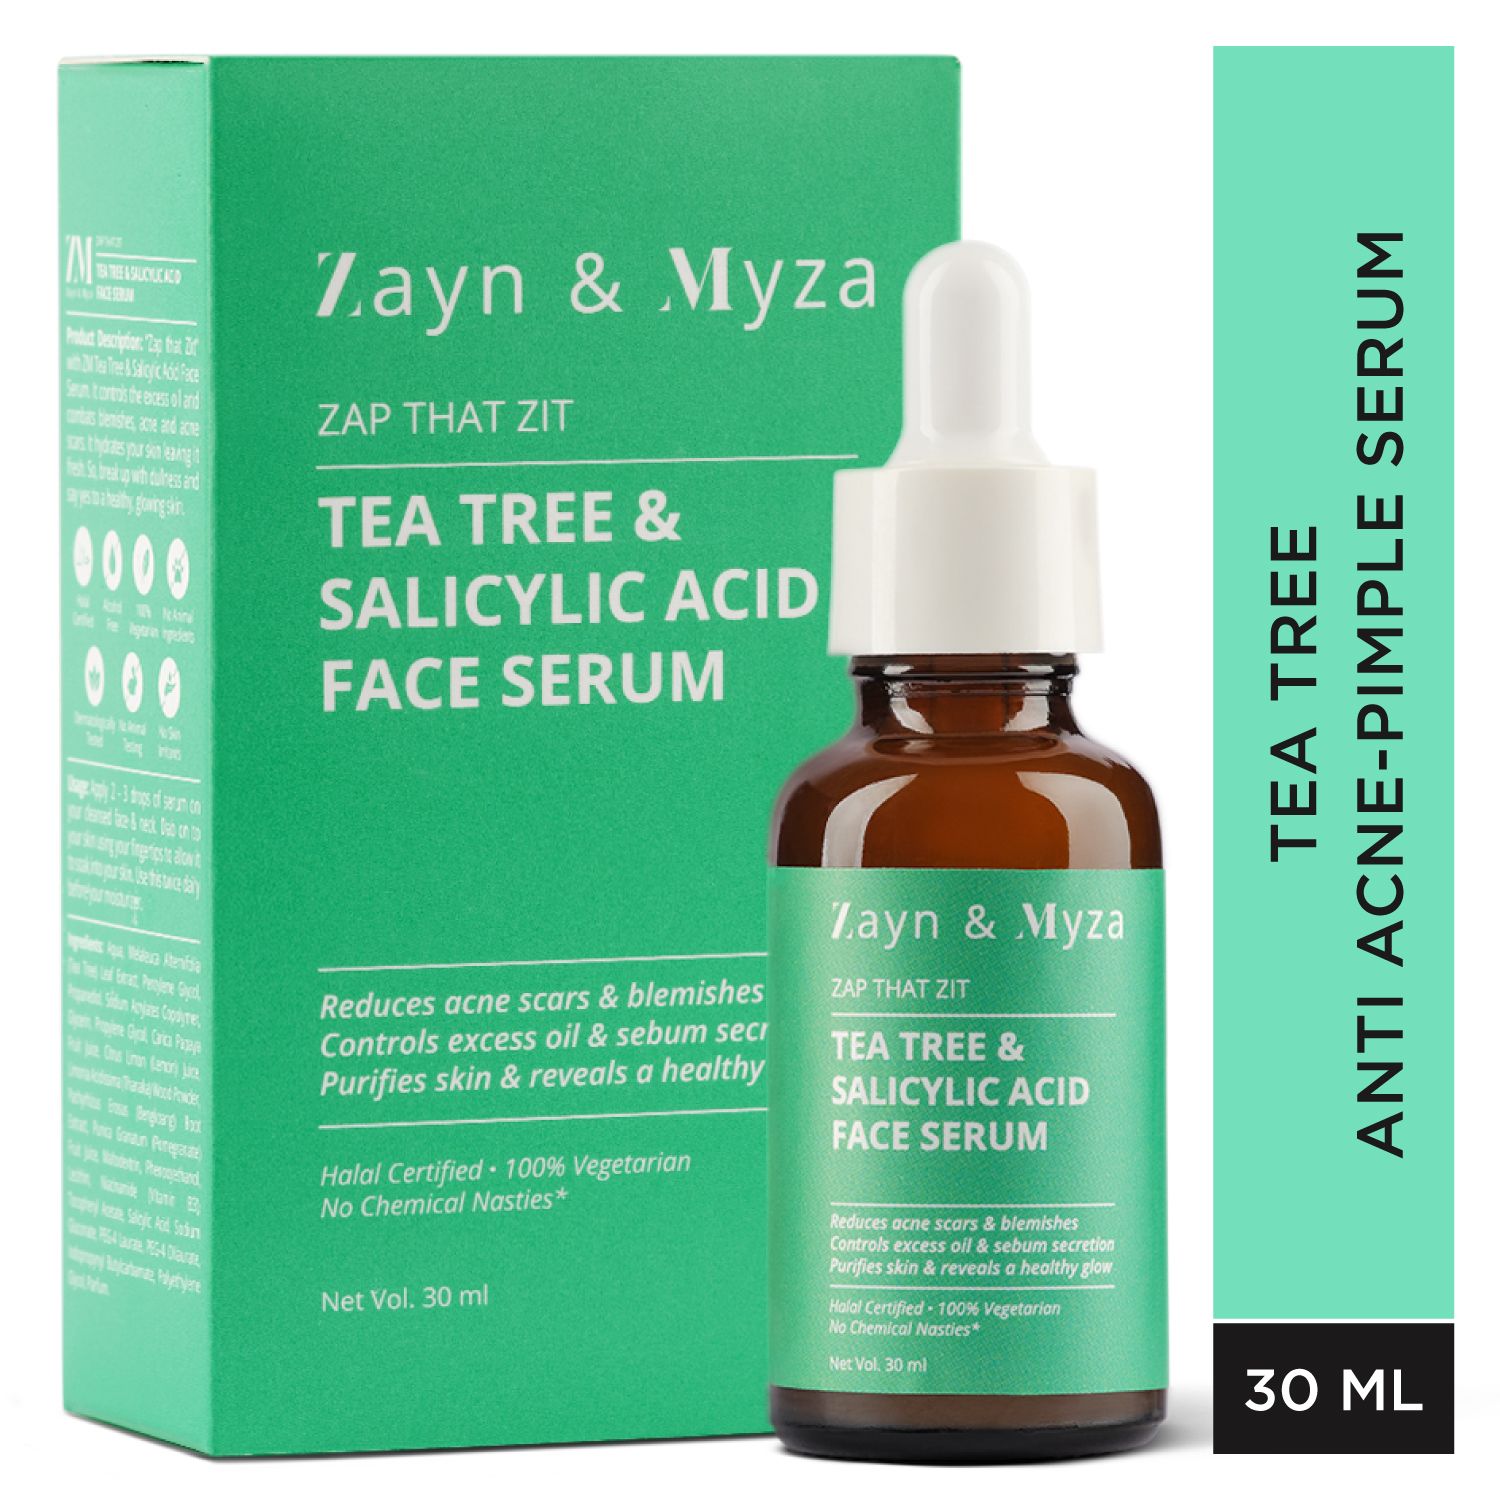 Tea Tree & Salicylic Acid Face Serum